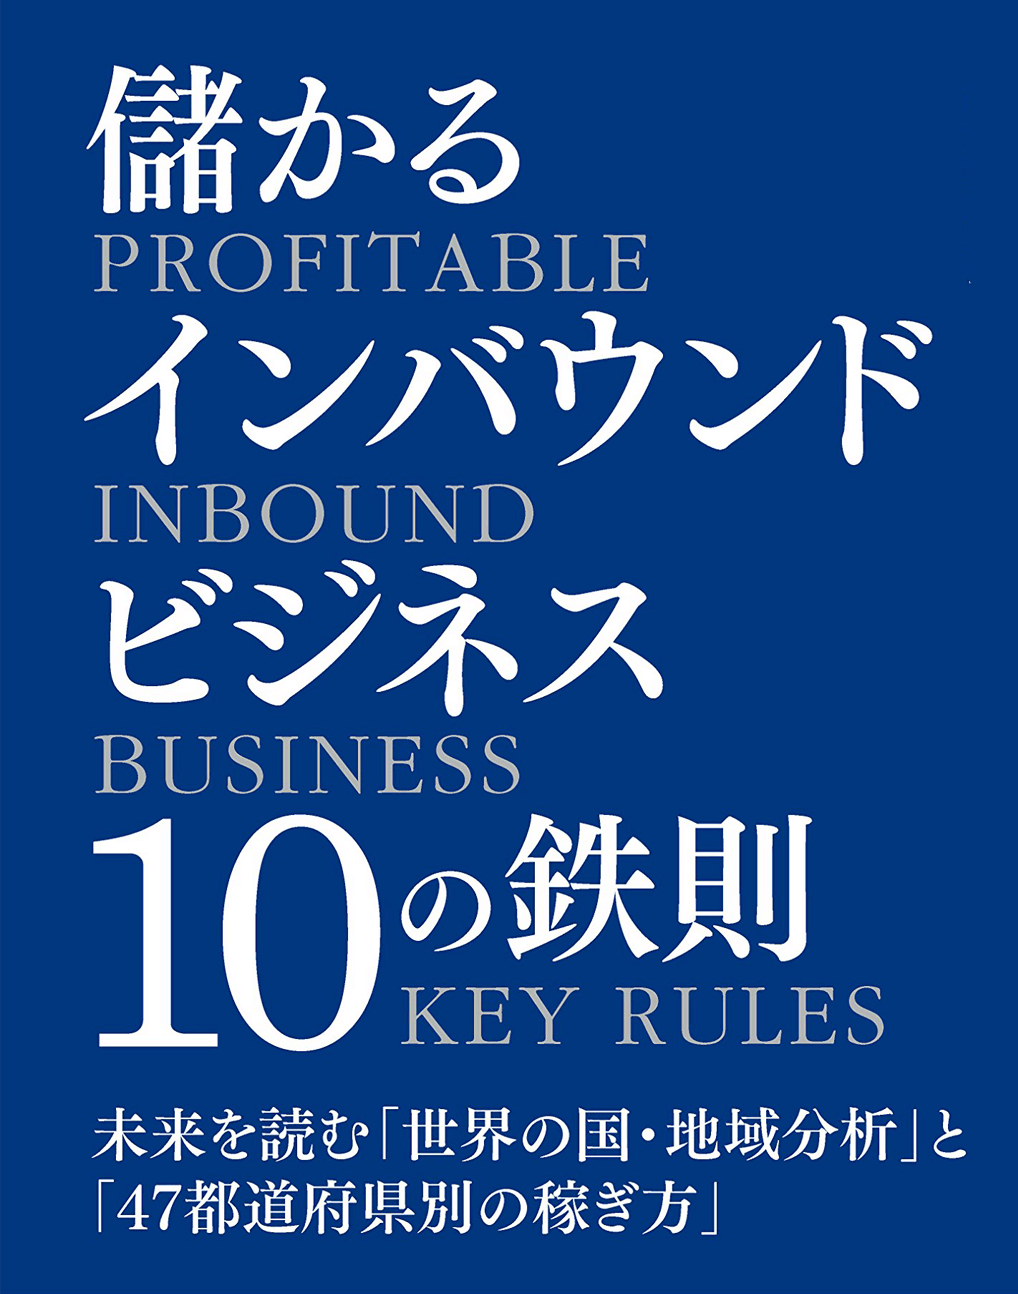 『儲かるインバウンドビジネス10の鉄則 未来を読む「世界の国・地域分析」と「47都道府県別の稼ぎ方」』